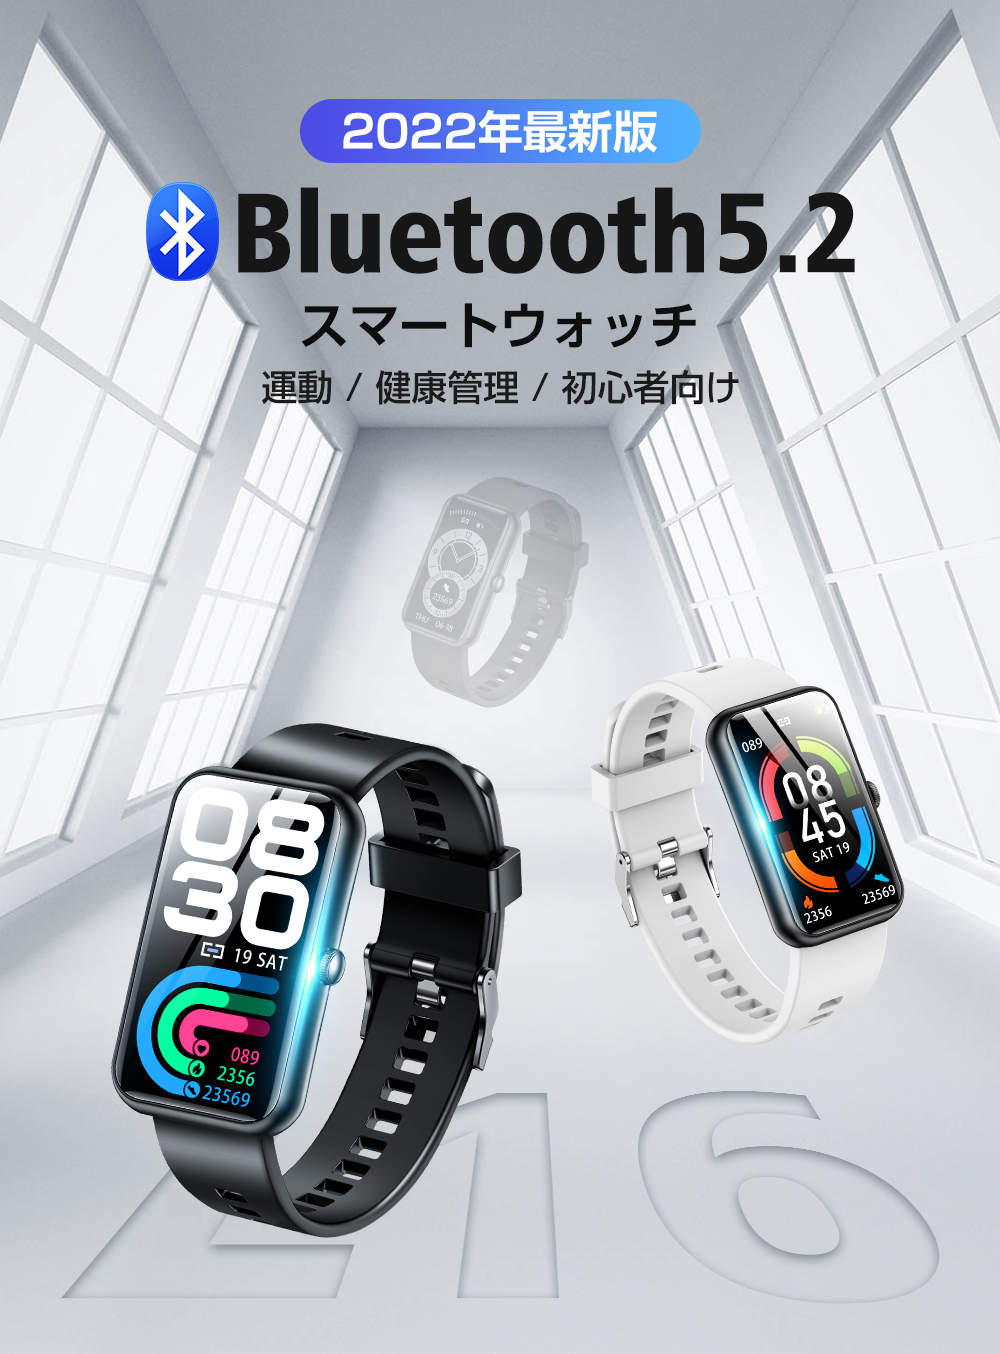 スマートウォッチ 血圧 酸素濃度 2022年最新 Bluetooth5.2 心拍数 25種運動モード 歩数計 IP68防水 着信通知 睡眠検測  iPhone Android対応 :L16:Belando - 通販 - Yahoo!ショッピング